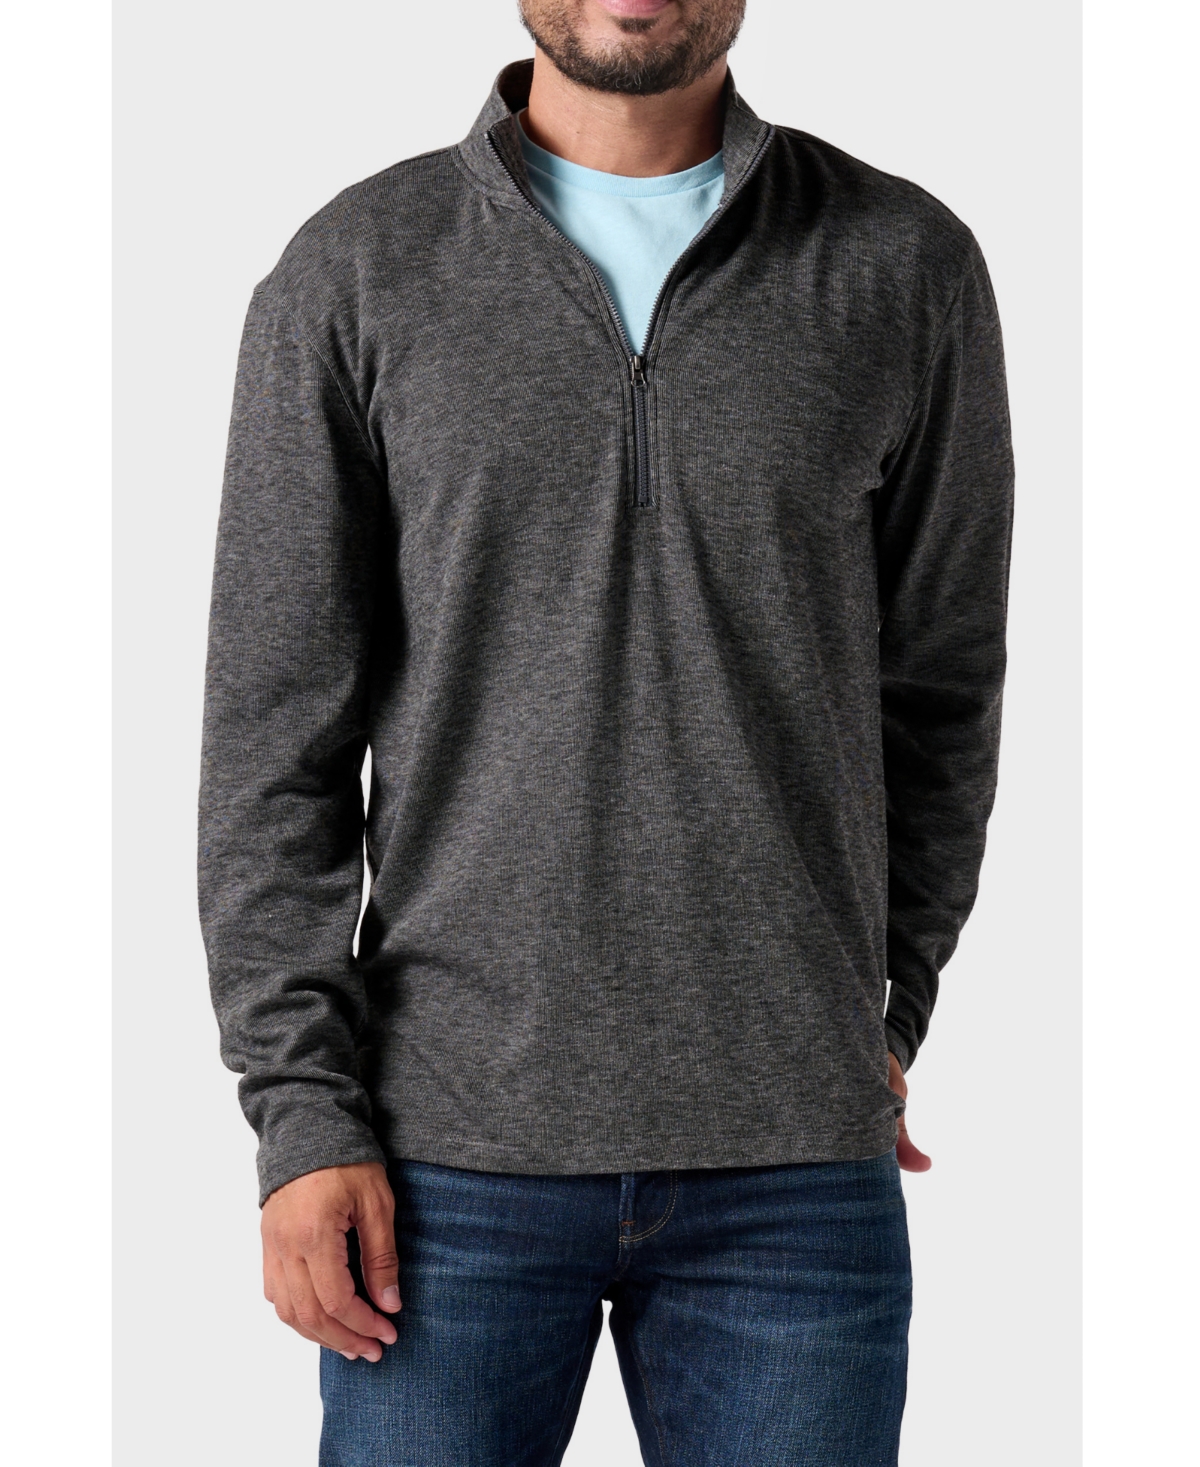 Horizon Men's Long Sleeve Half Zip Pullover Sweater - Tobacco